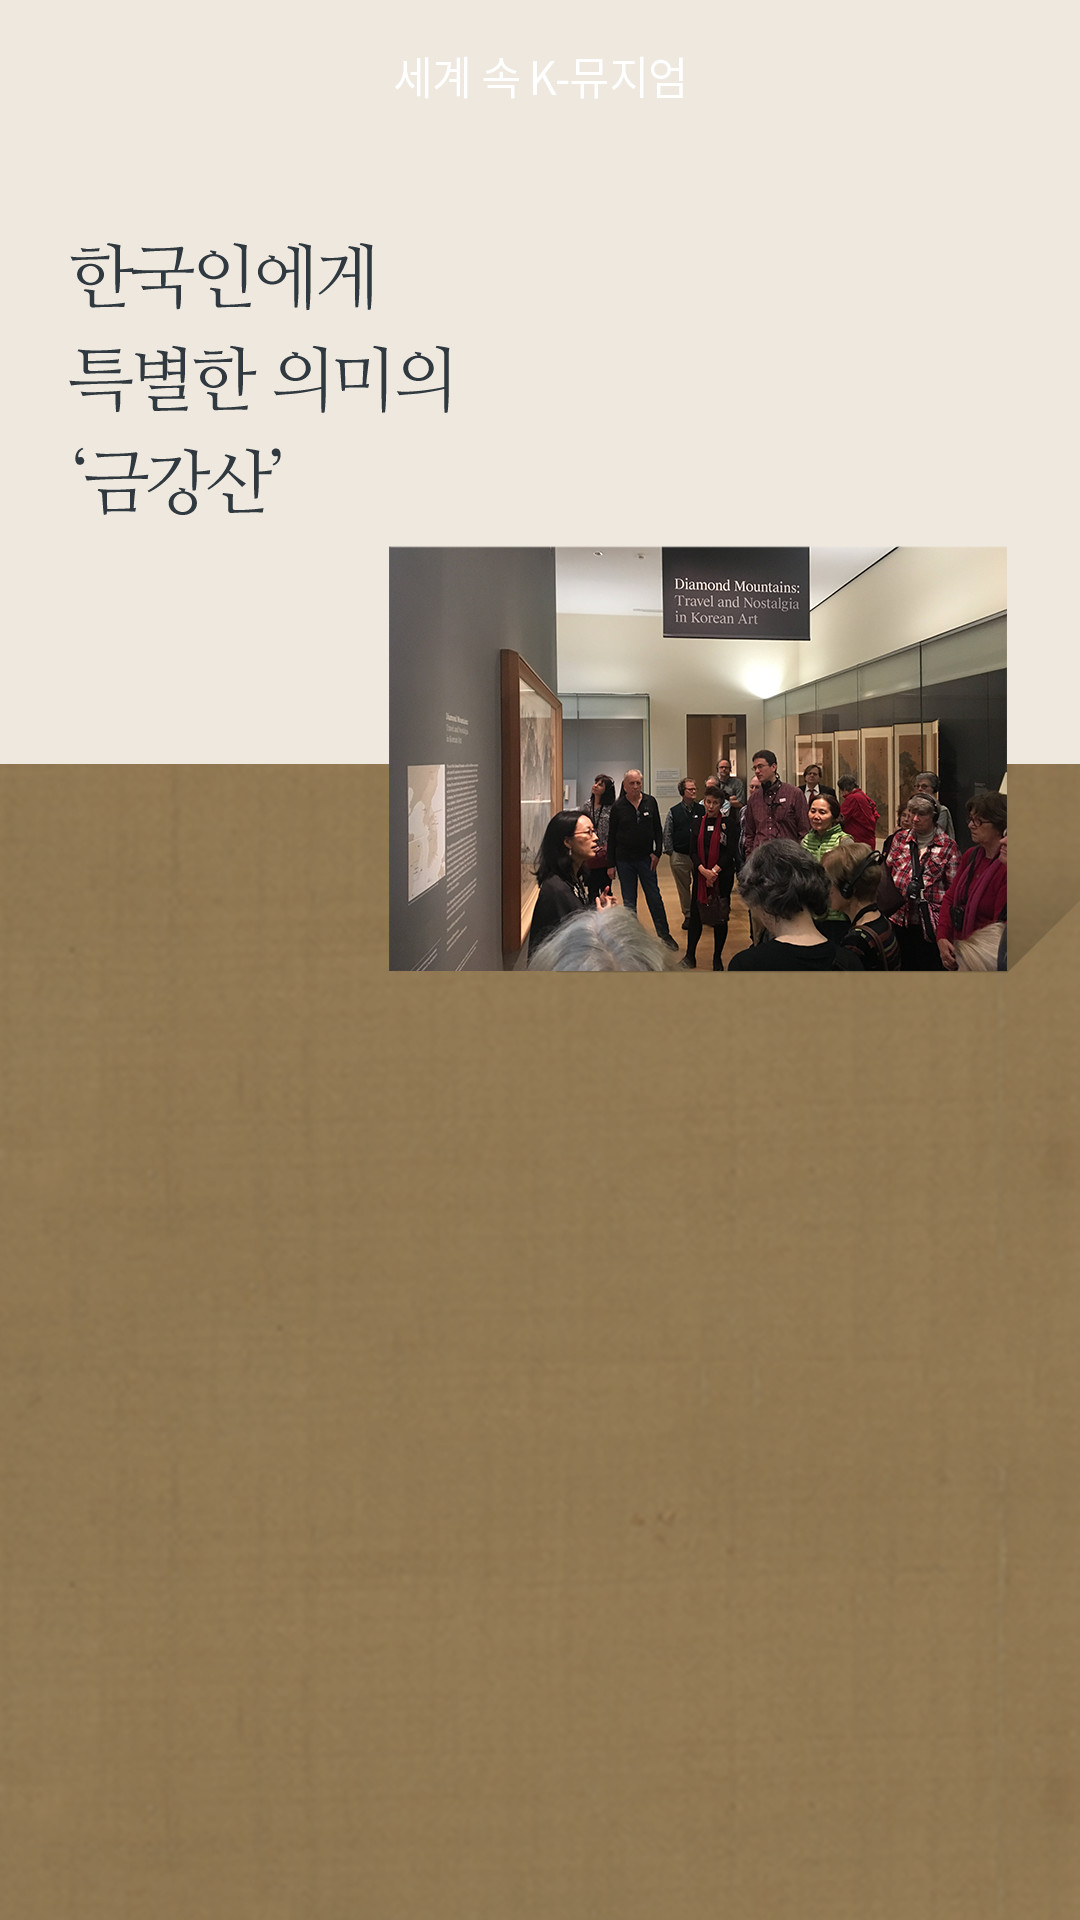 한국인에게 특별한 의미의 '금강산' 